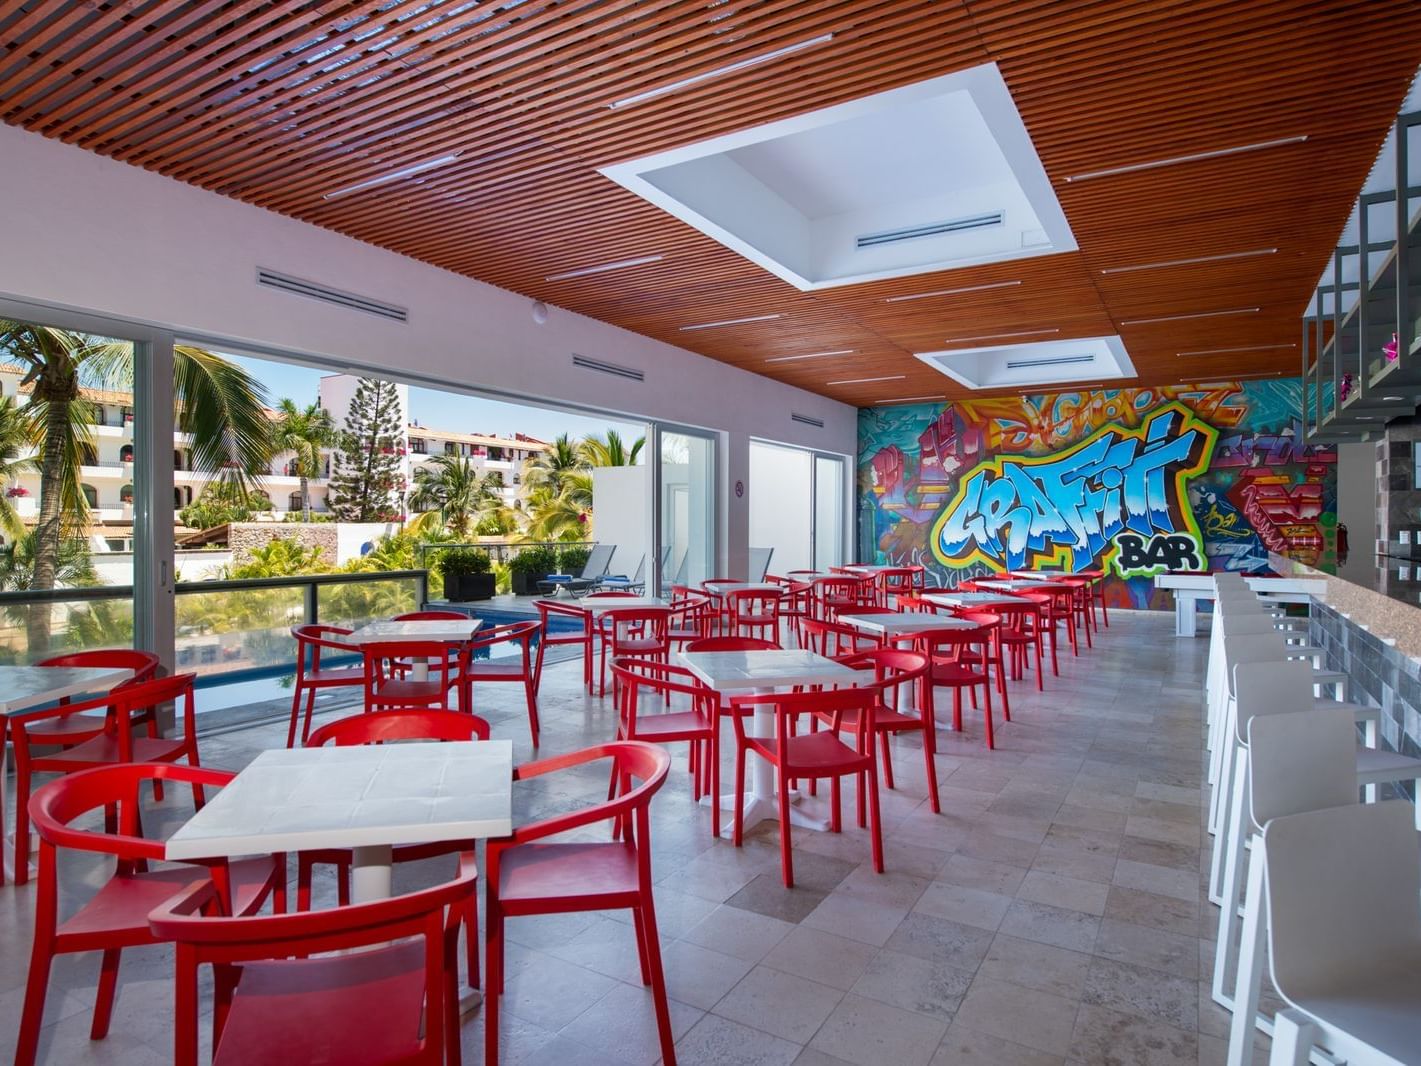 Dining area in the Graffiti Bar at Hotel Villa Varadero